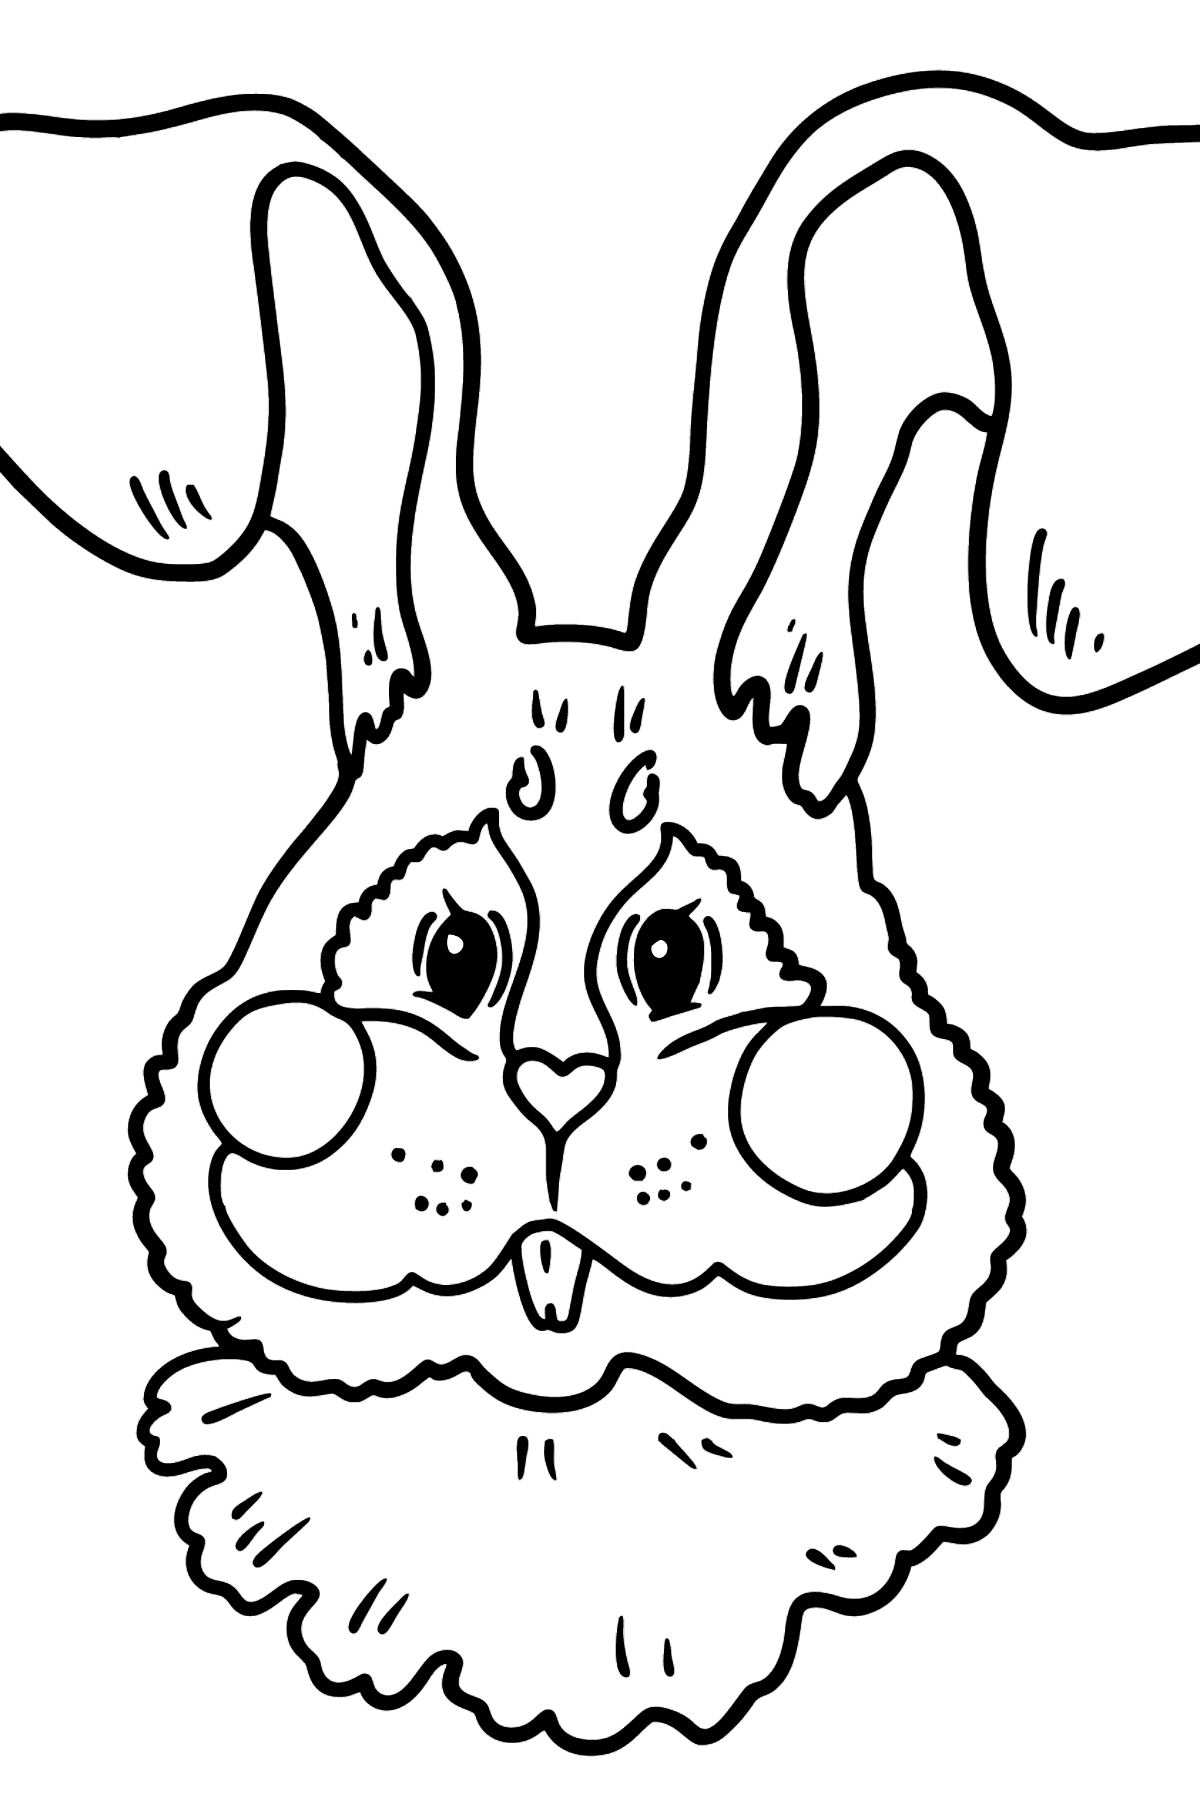 Boyama sayfası tavşan namlu - Boyamalar çocuklar için